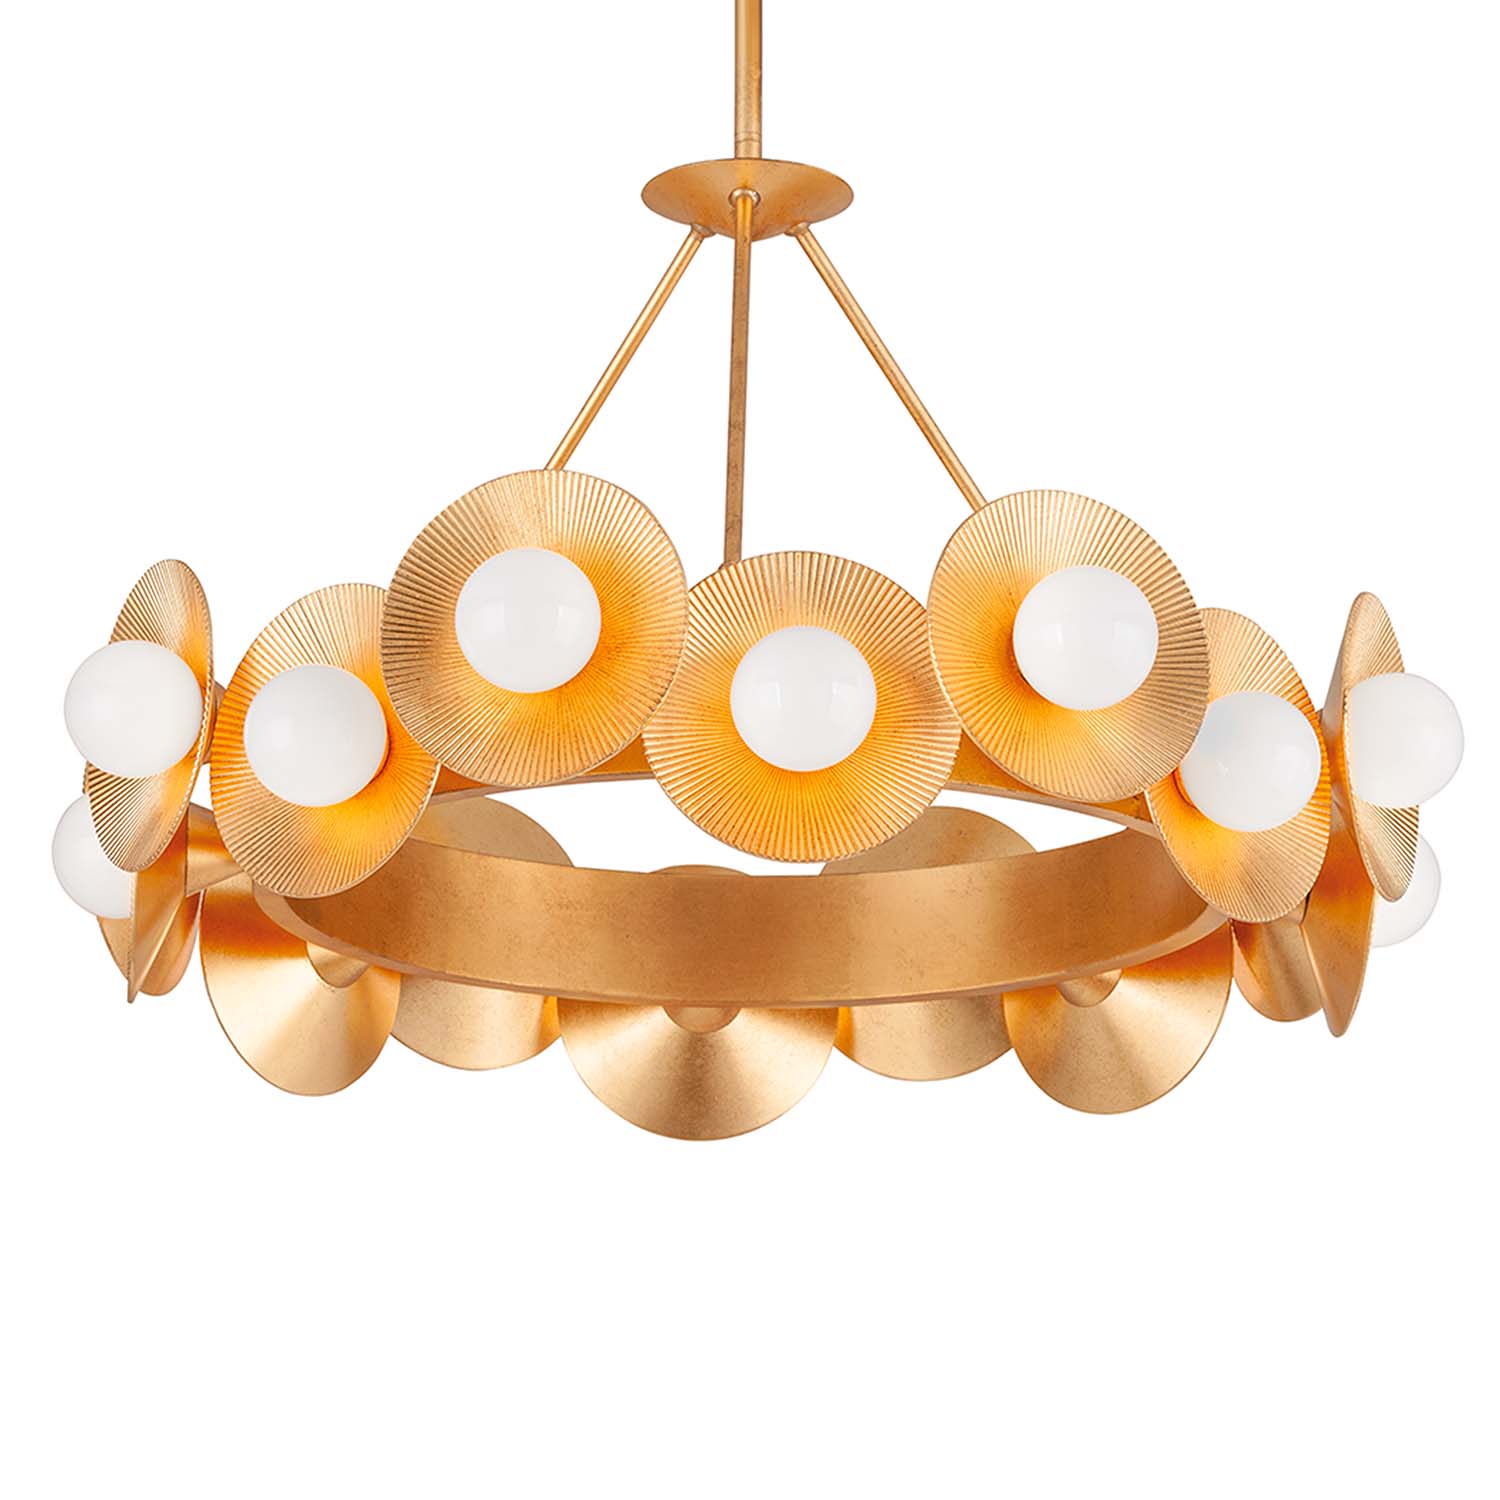 EMERALD - Circular brass chandelier, flower crown